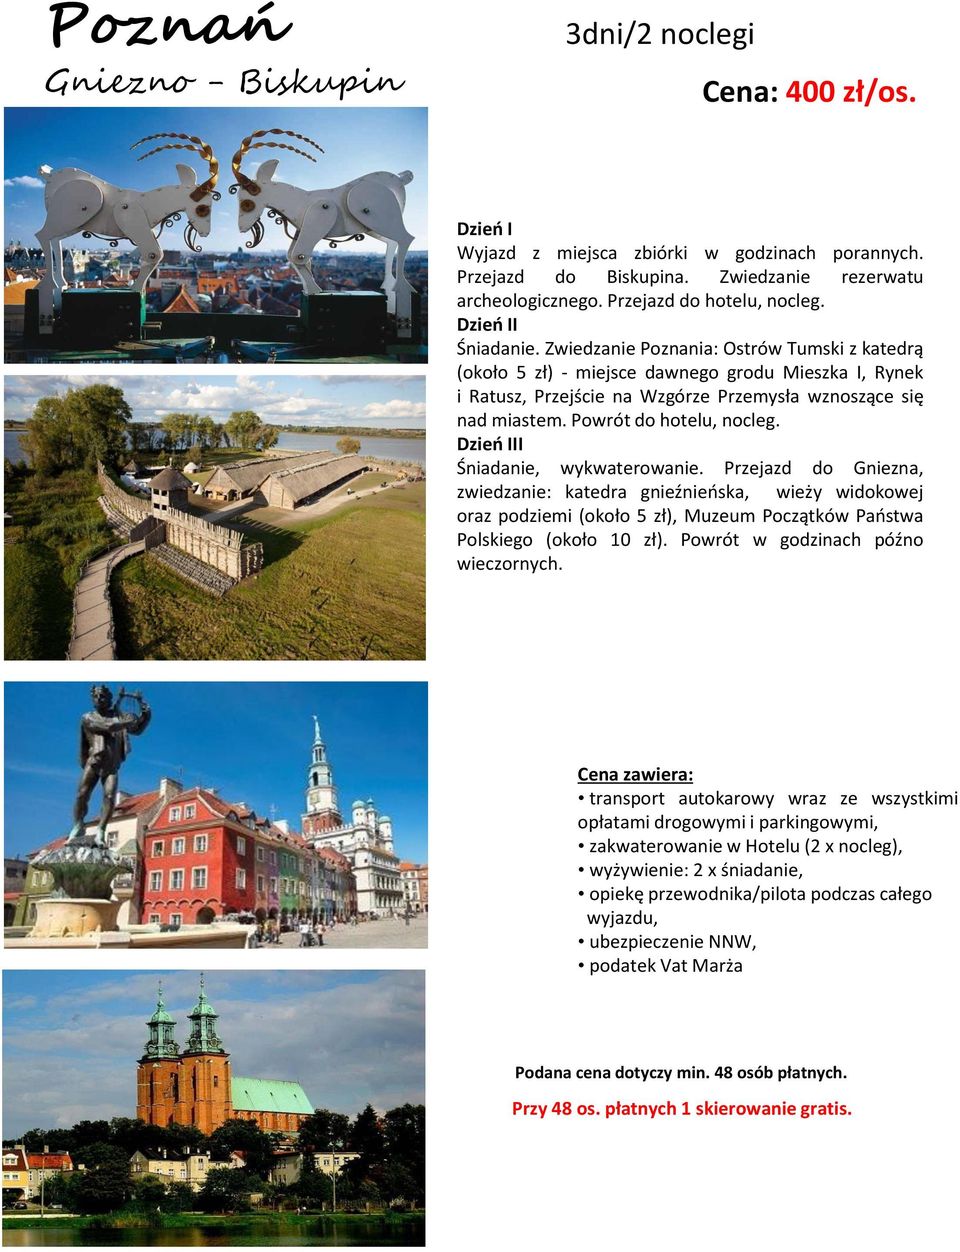 Zwiedzanie Poznania: Ostrów Tumski z katedrą (około 5 zł) - miejsce dawnego grodu Mieszka I, Rynek i Ratusz, Przejście na Wzgórze Przemysła wznoszące się nad